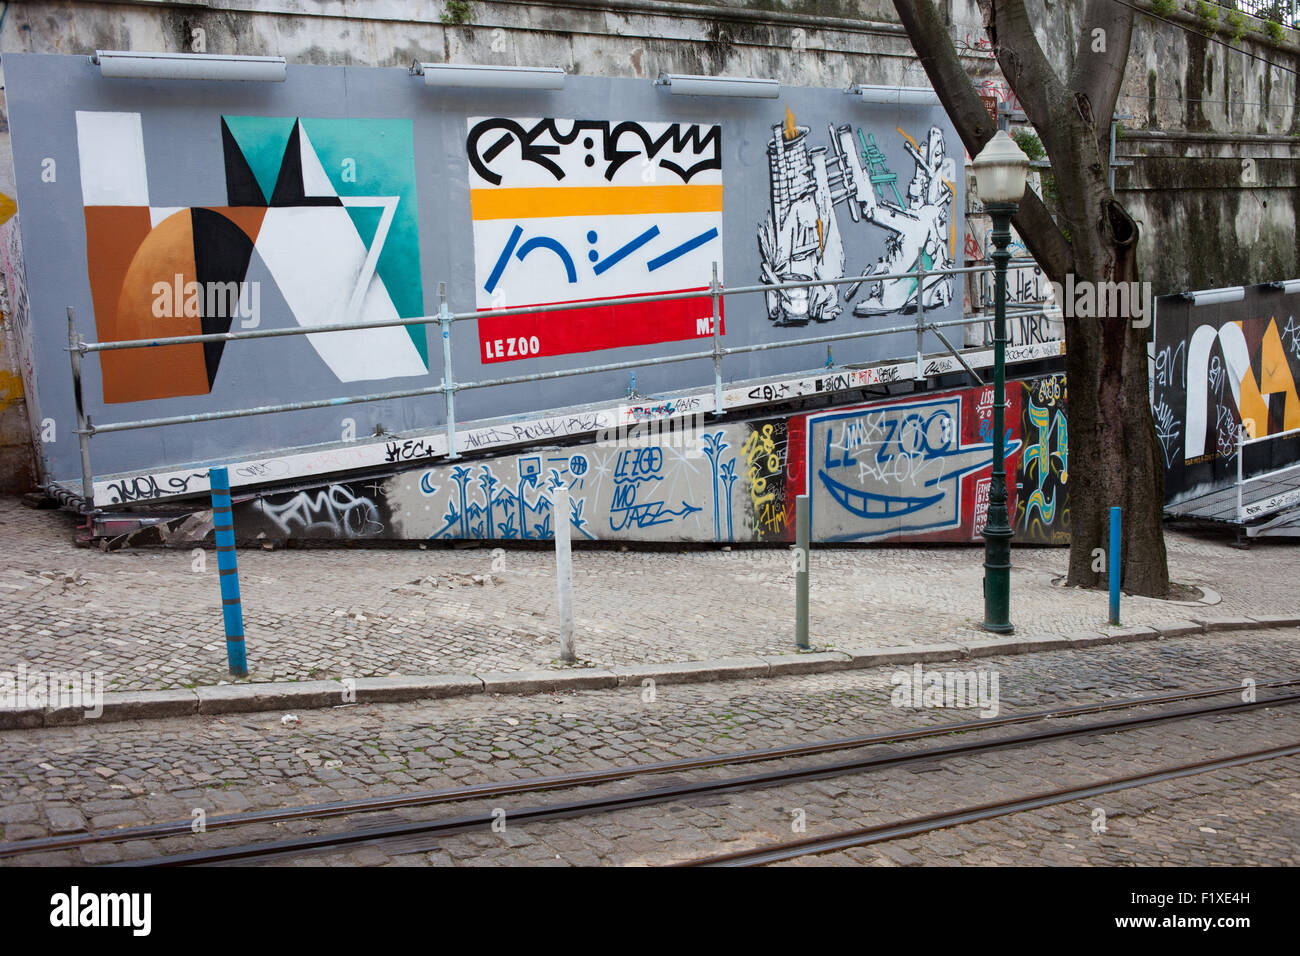 Il Portogallo, Lisbona, murale, graffiti, città urban street art - Galeria de Arte Urbana Foto Stock